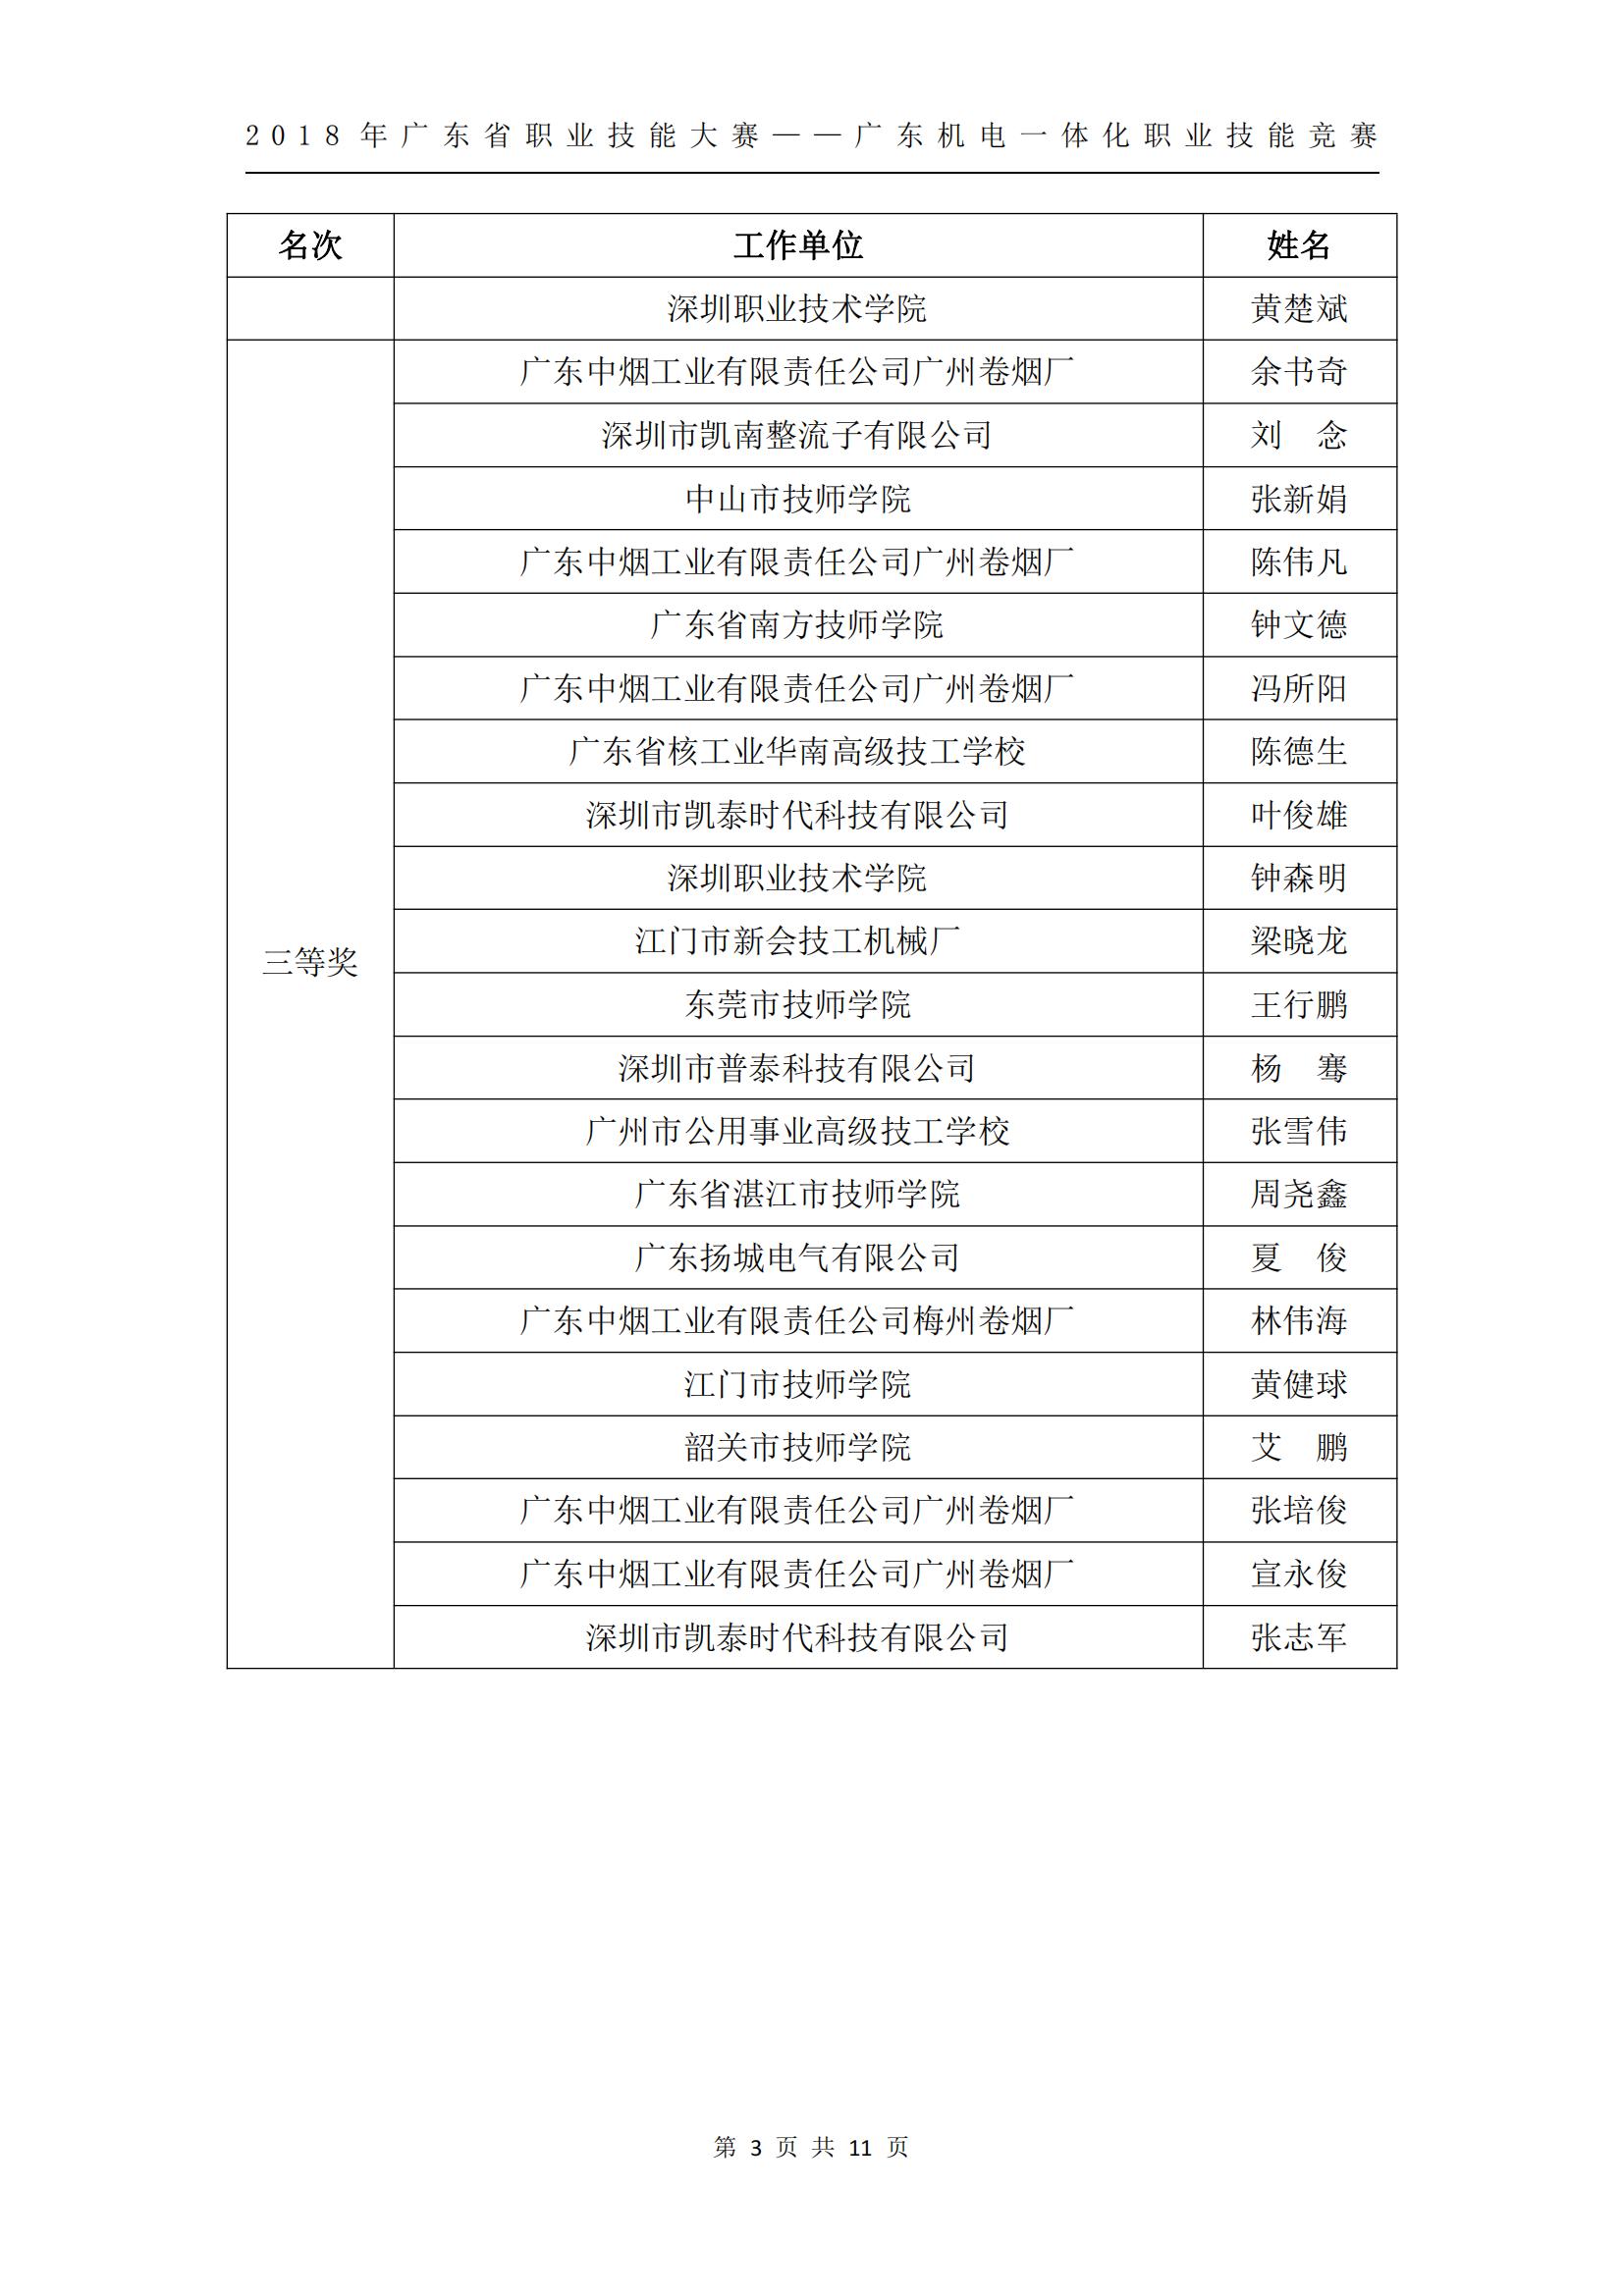 2018 年广东省职业技能大赛——广东机电一体化职业技能竞赛获奖人员和单位公布_02.jpg